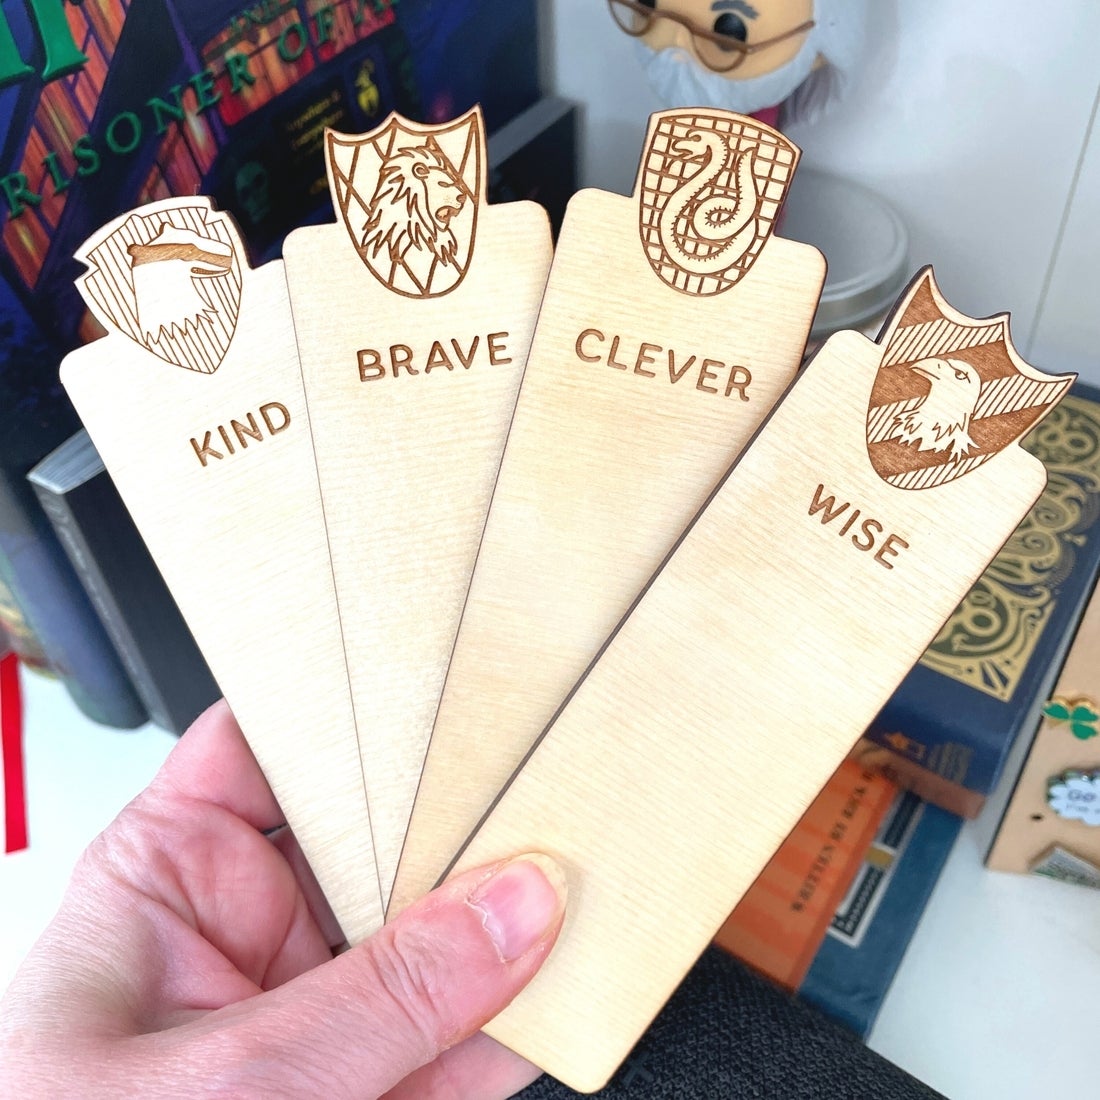 Harry Potter - Hogwarts Bookmarks